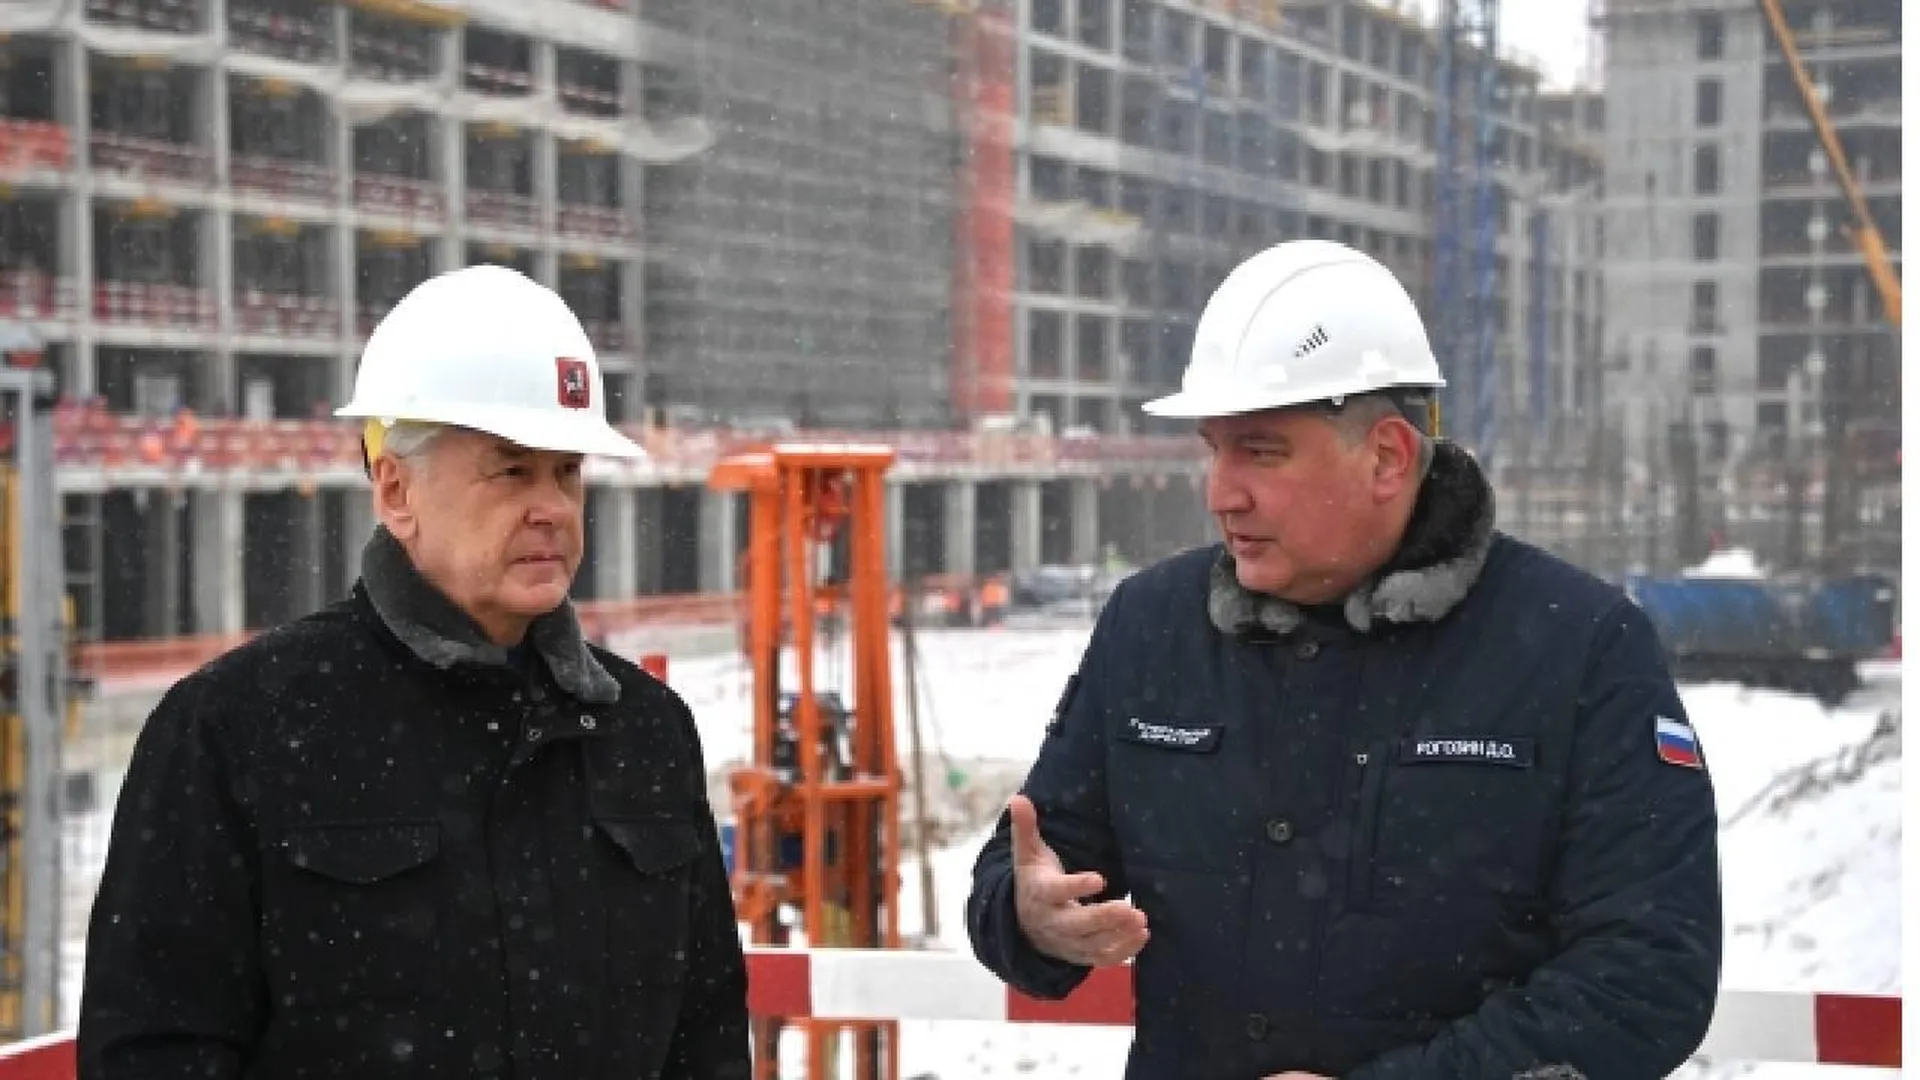 Заместитель мэра Бочкарев: В Москве высота башни НКЦ достигнет 288 метров